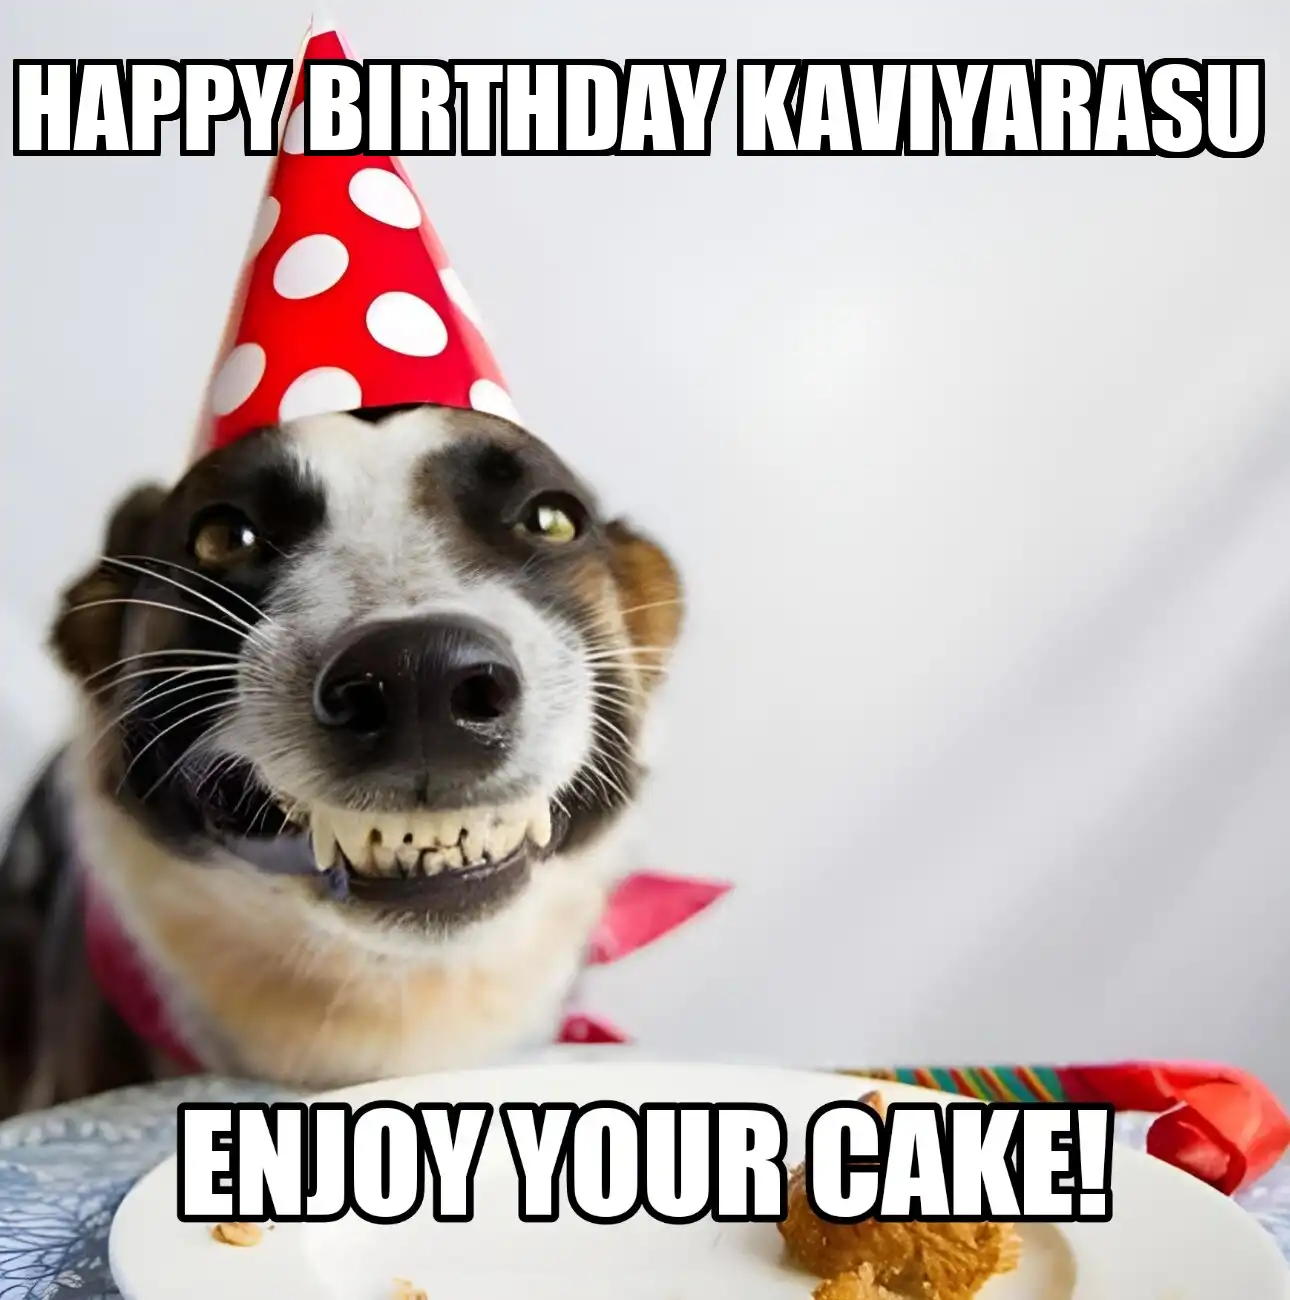 Happy Birthday Kaviyarasu Enjoy Your Cake Dog Meme